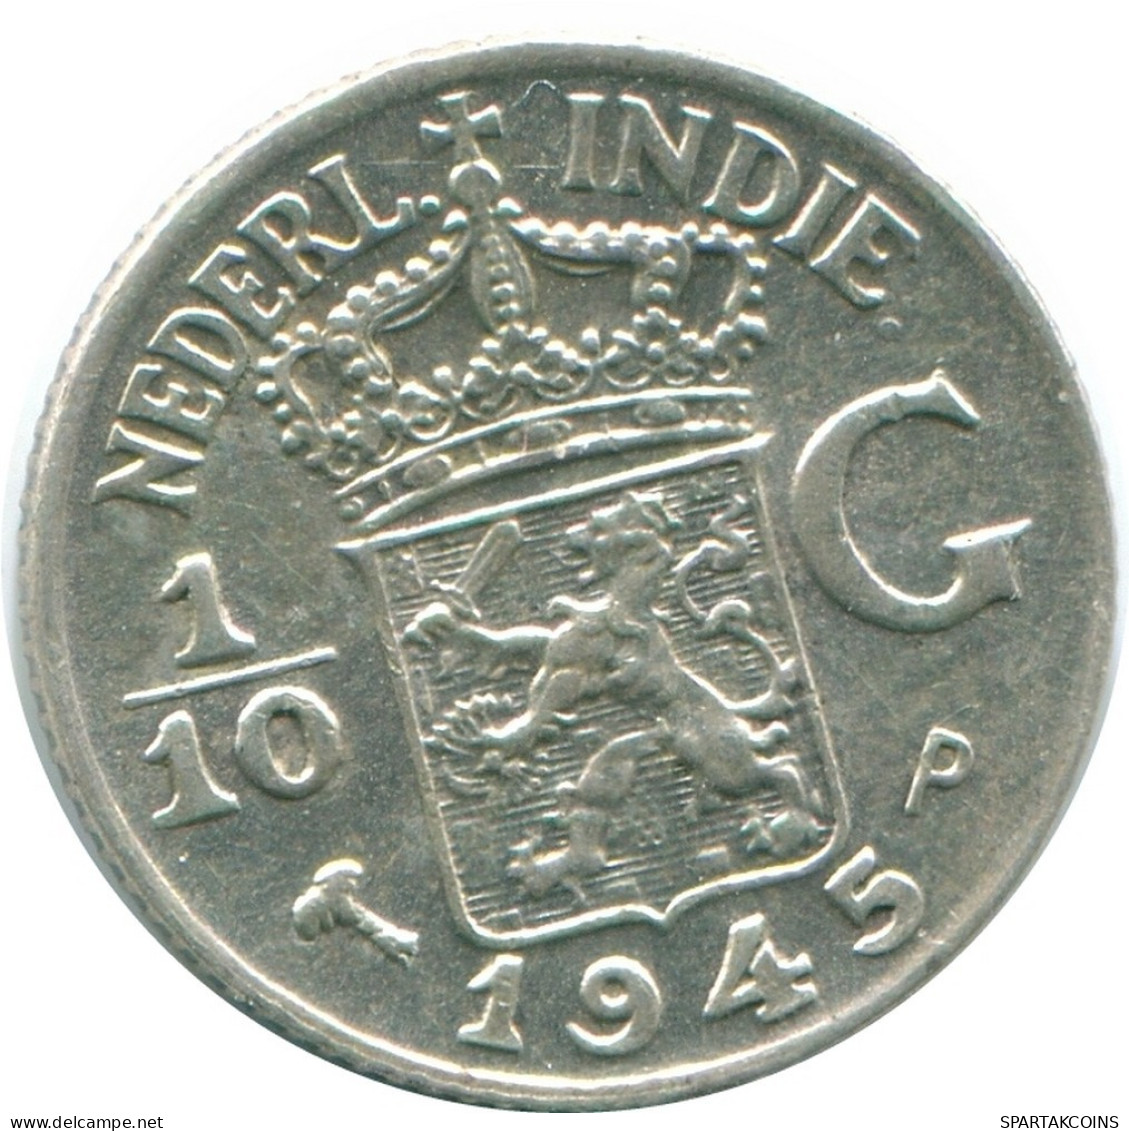 1/10 GULDEN 1945 P NIEDERLANDE OSTINDIEN SILBER Koloniale Münze #NL14128.3.D.A - Niederländisch-Indien